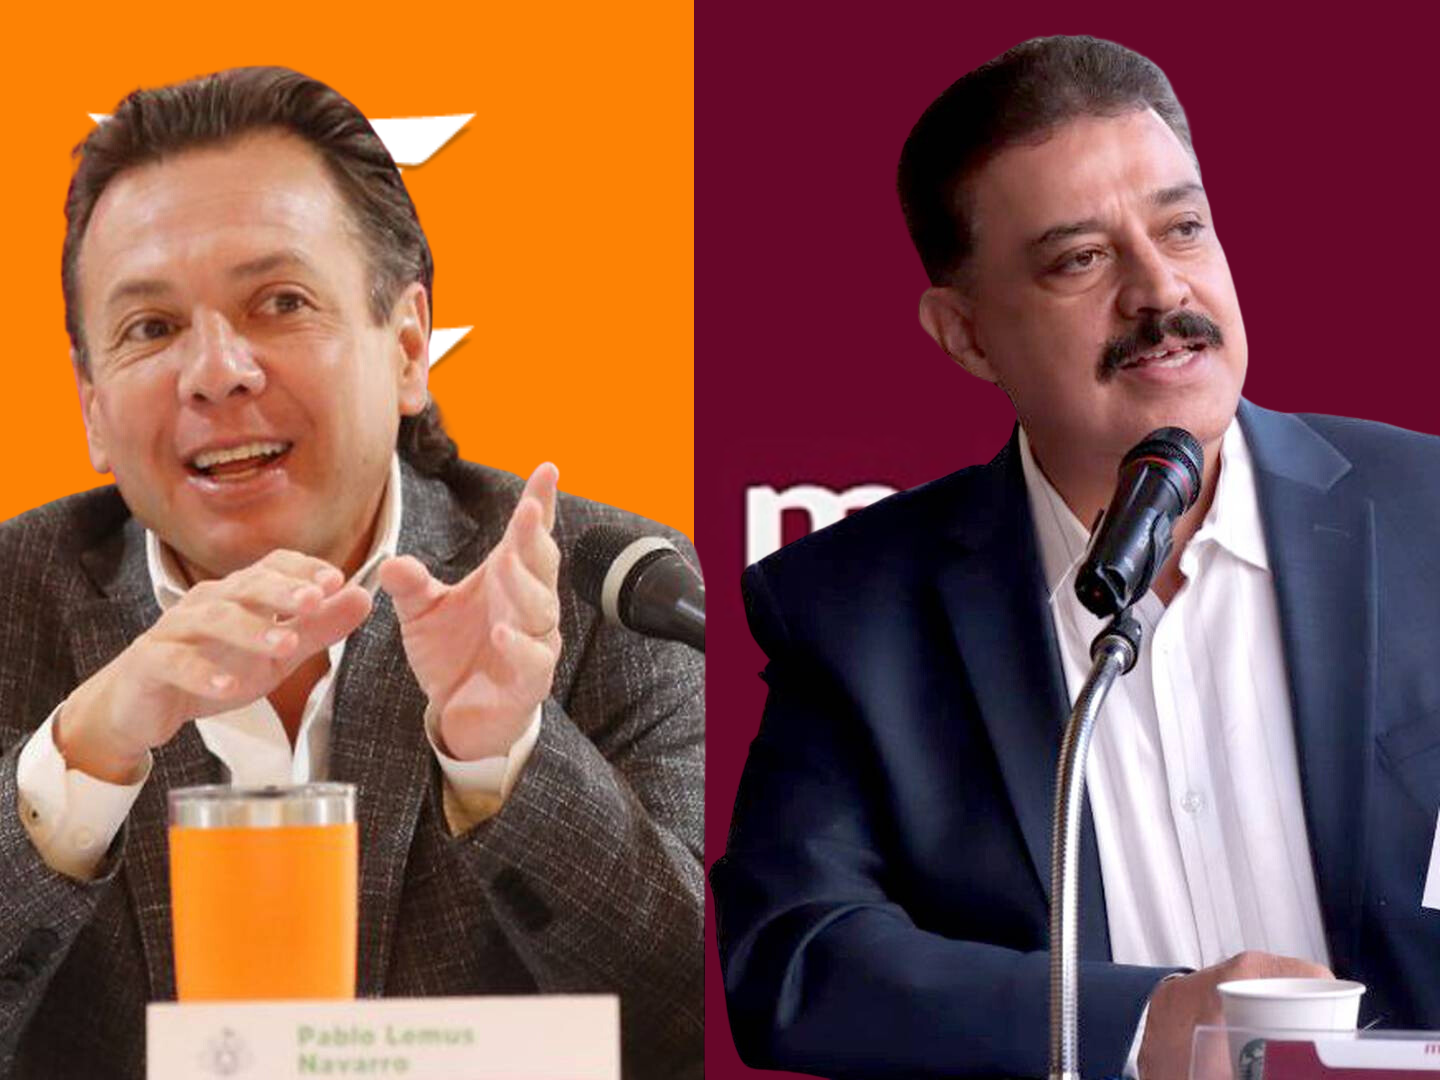 Pablo Lemus por el MC y Carlos Lomelí por Morena se disputan la contienda al Gobierno de Jalisco